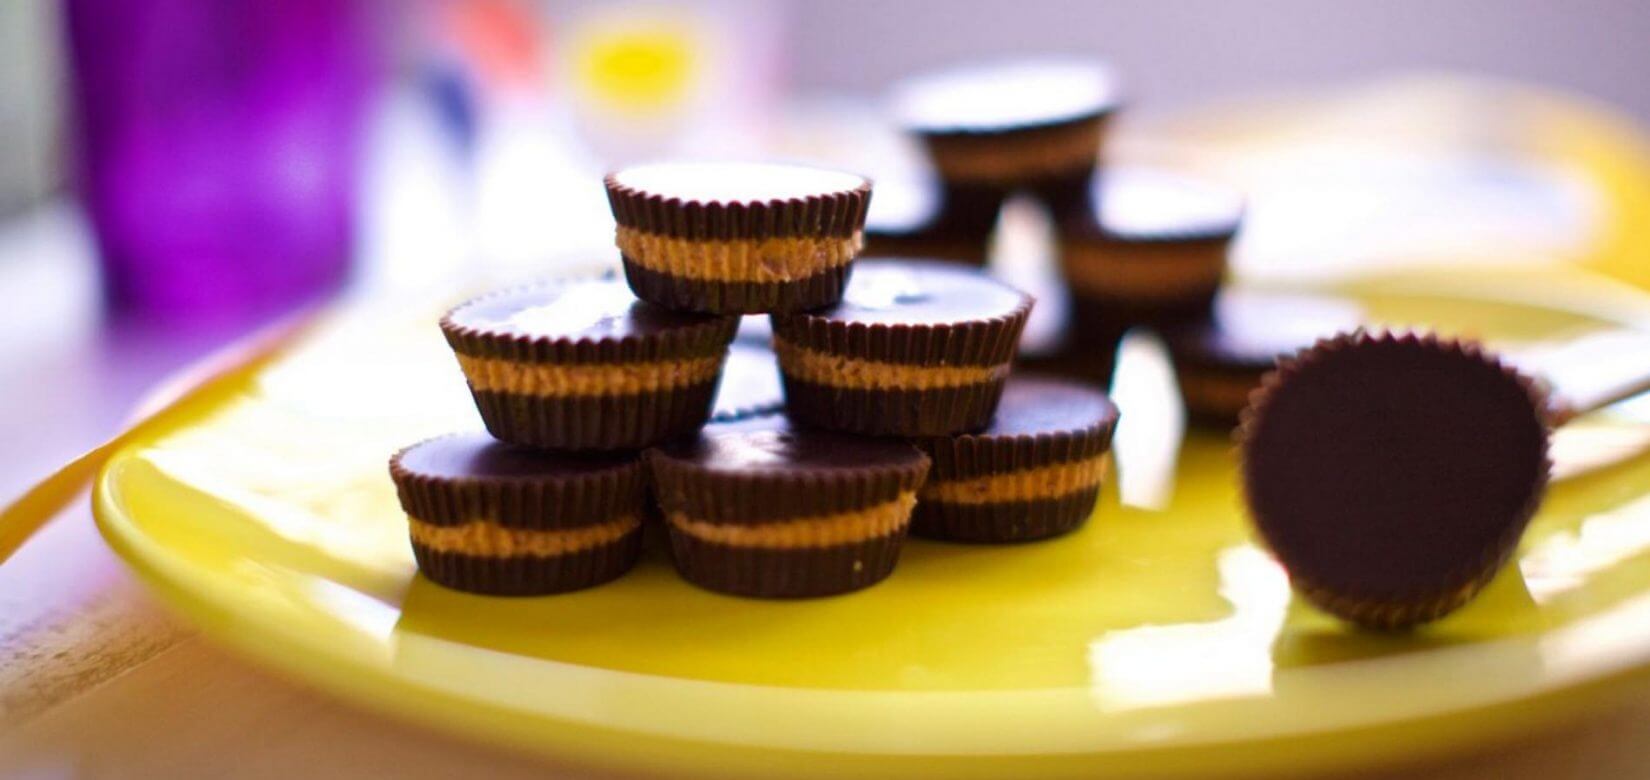 Φτιάξτε μοναδικά chocolate & peanut butter cups για να "επιβραβεύσετε" τα παιδιά σας!